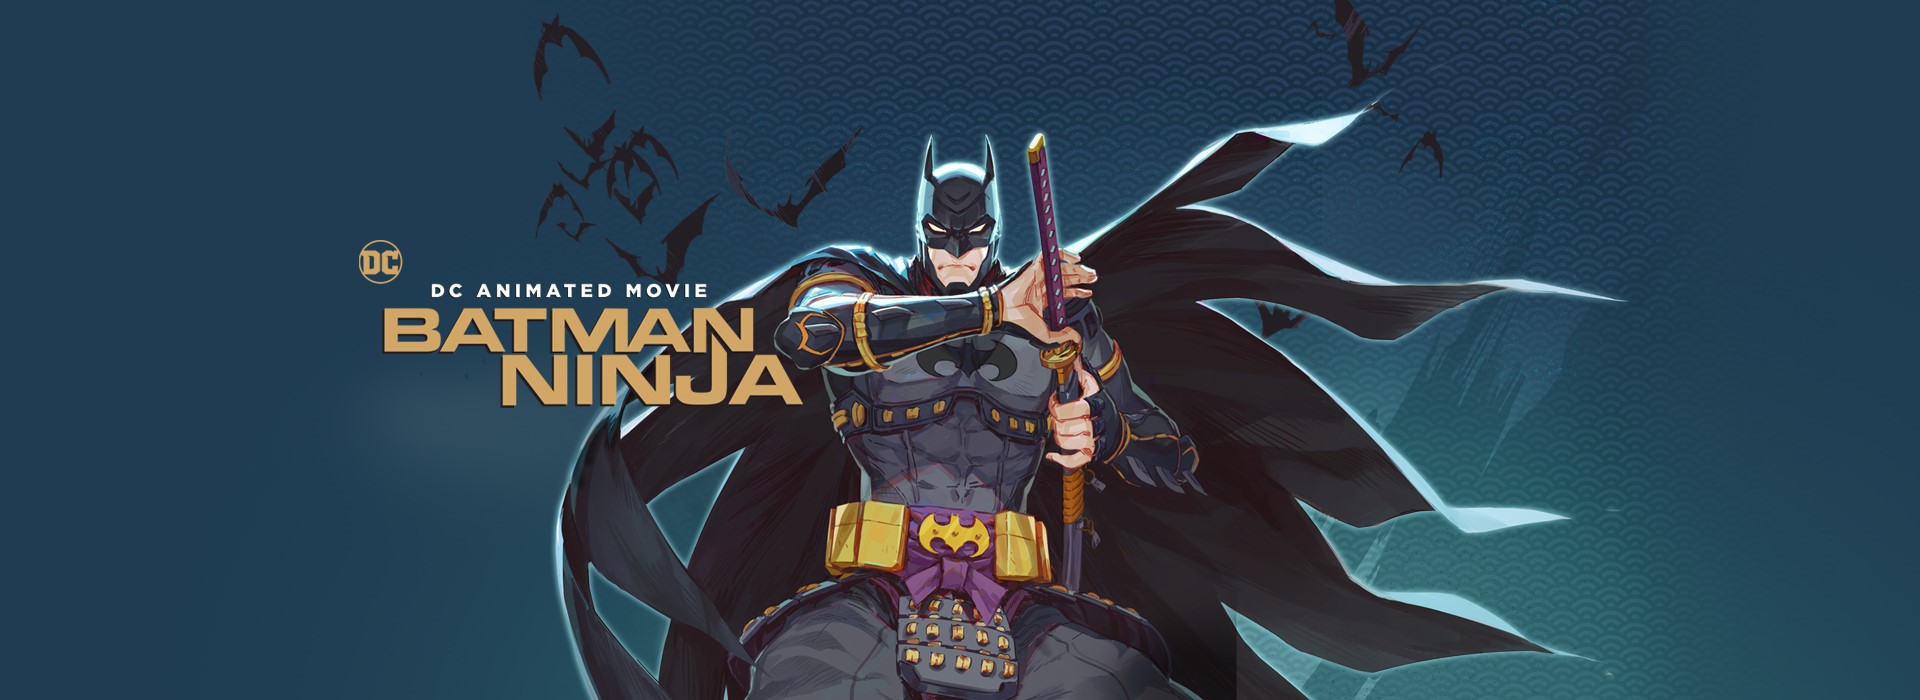 Batman Ninja - Immagine dal film